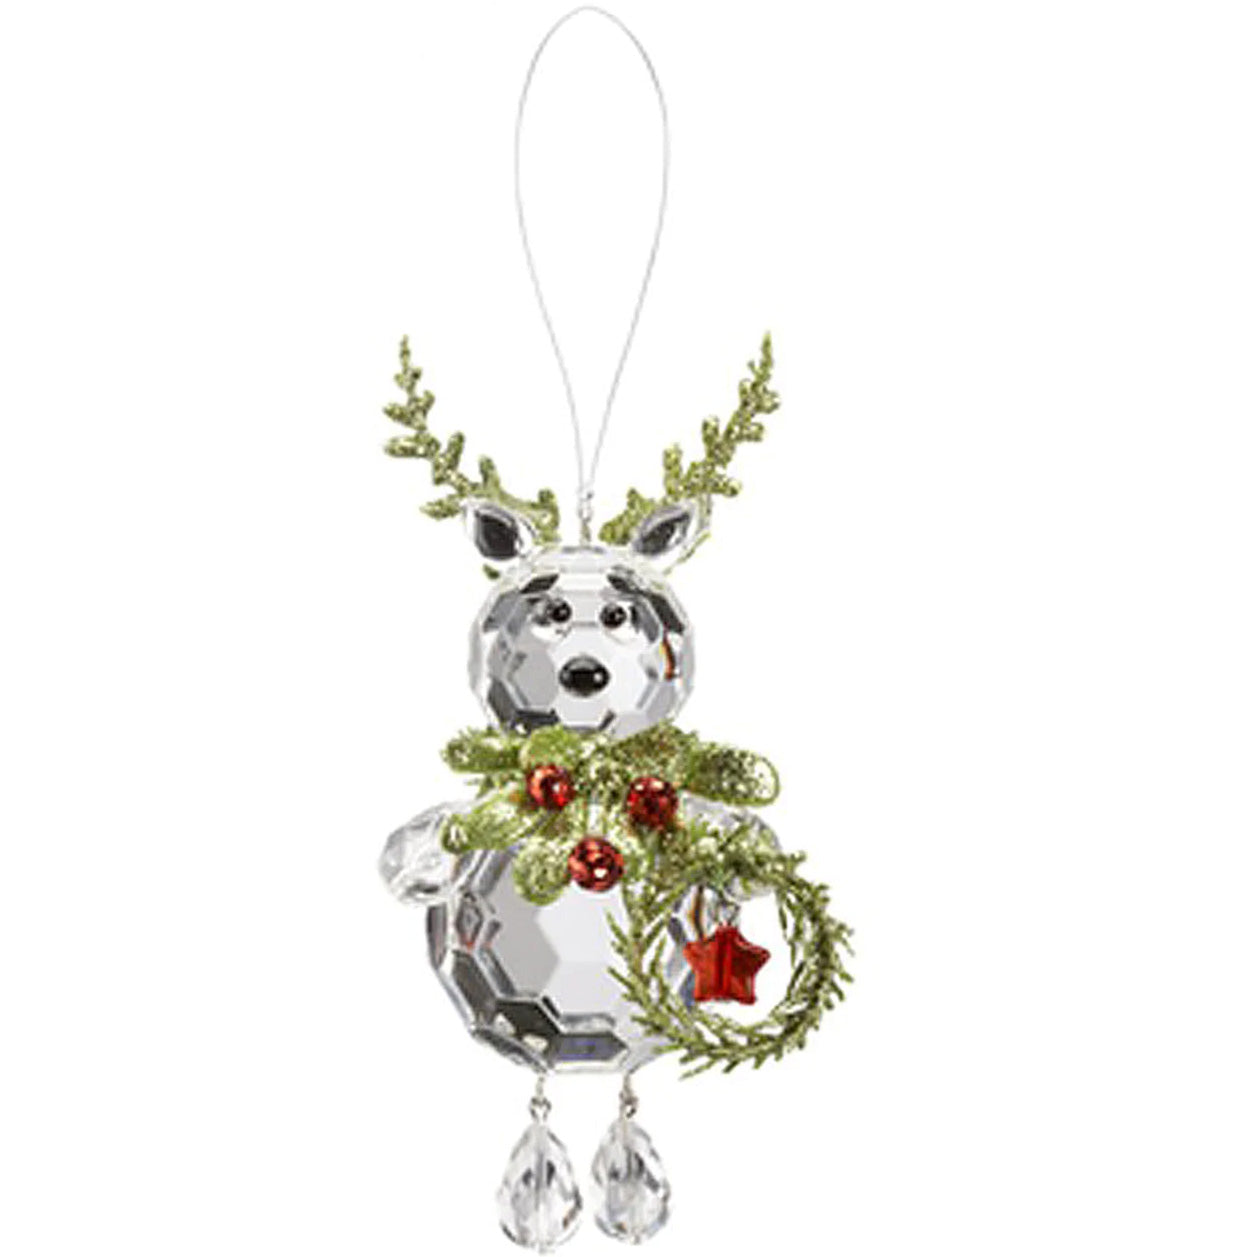 Teeny Reindeer Ornaments